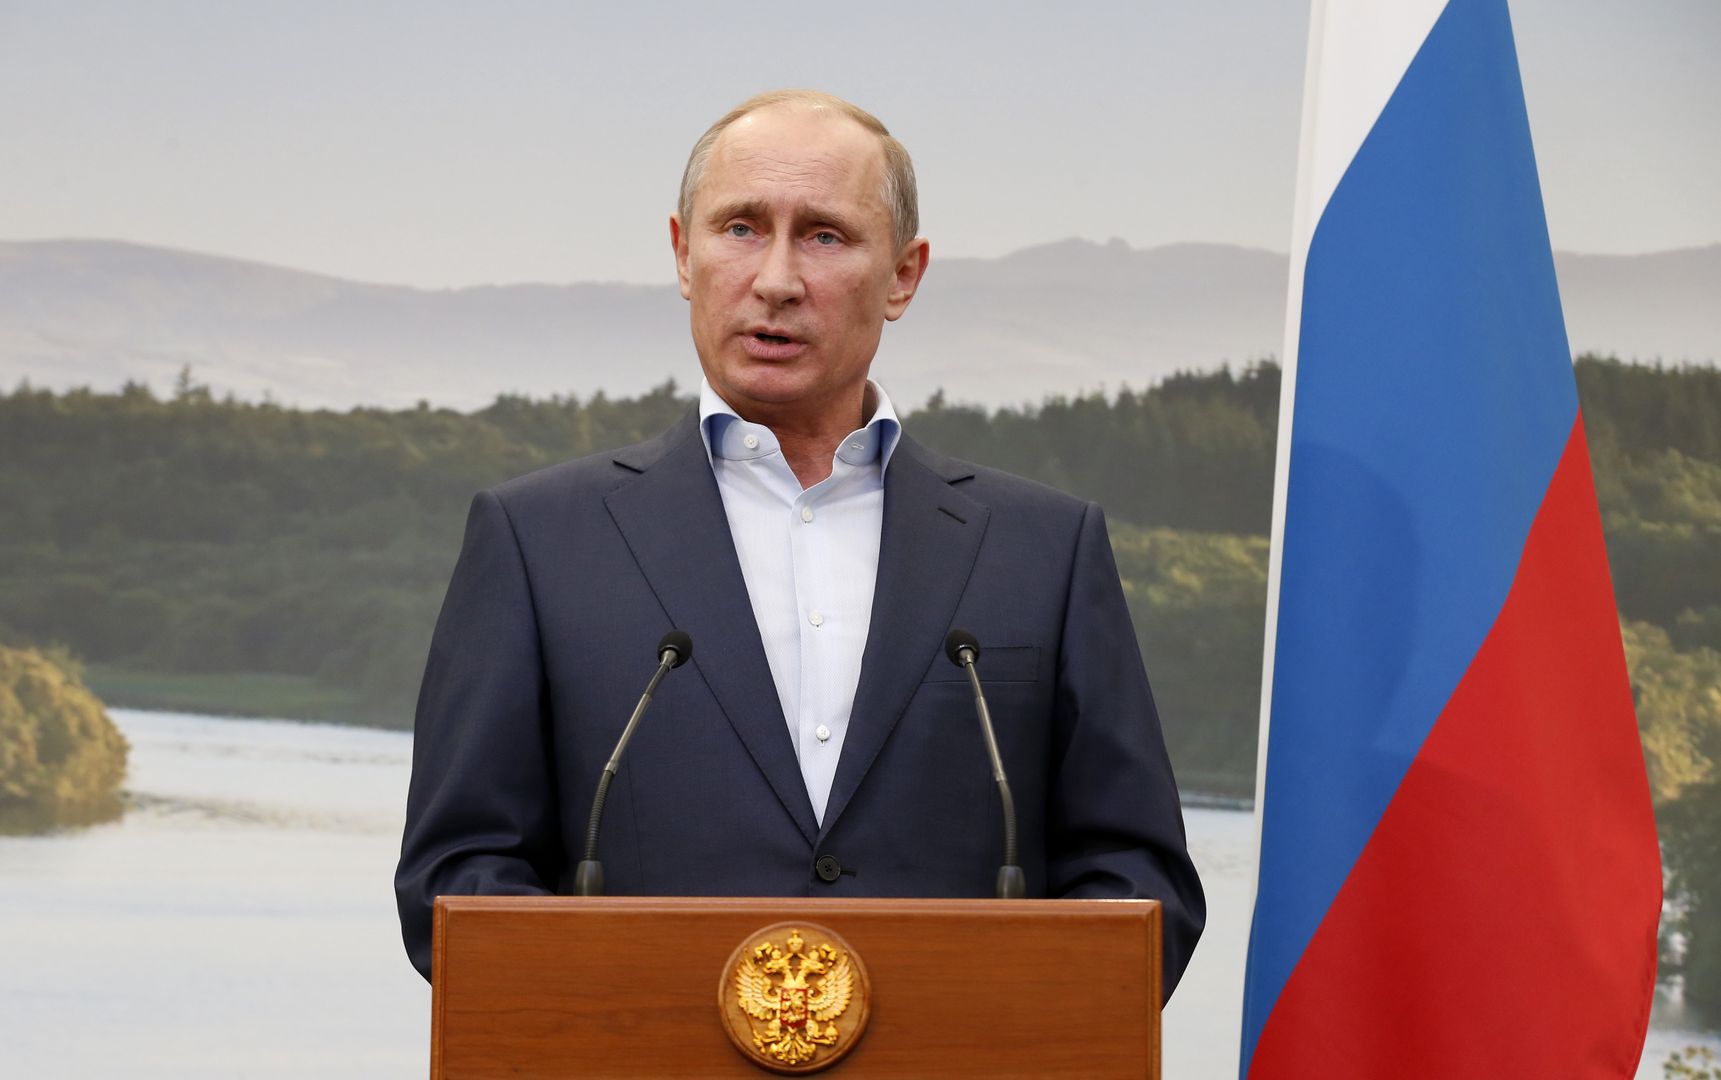 Władimir Putin o relacji Rosja - Polska. Wskazał, co można poprawić